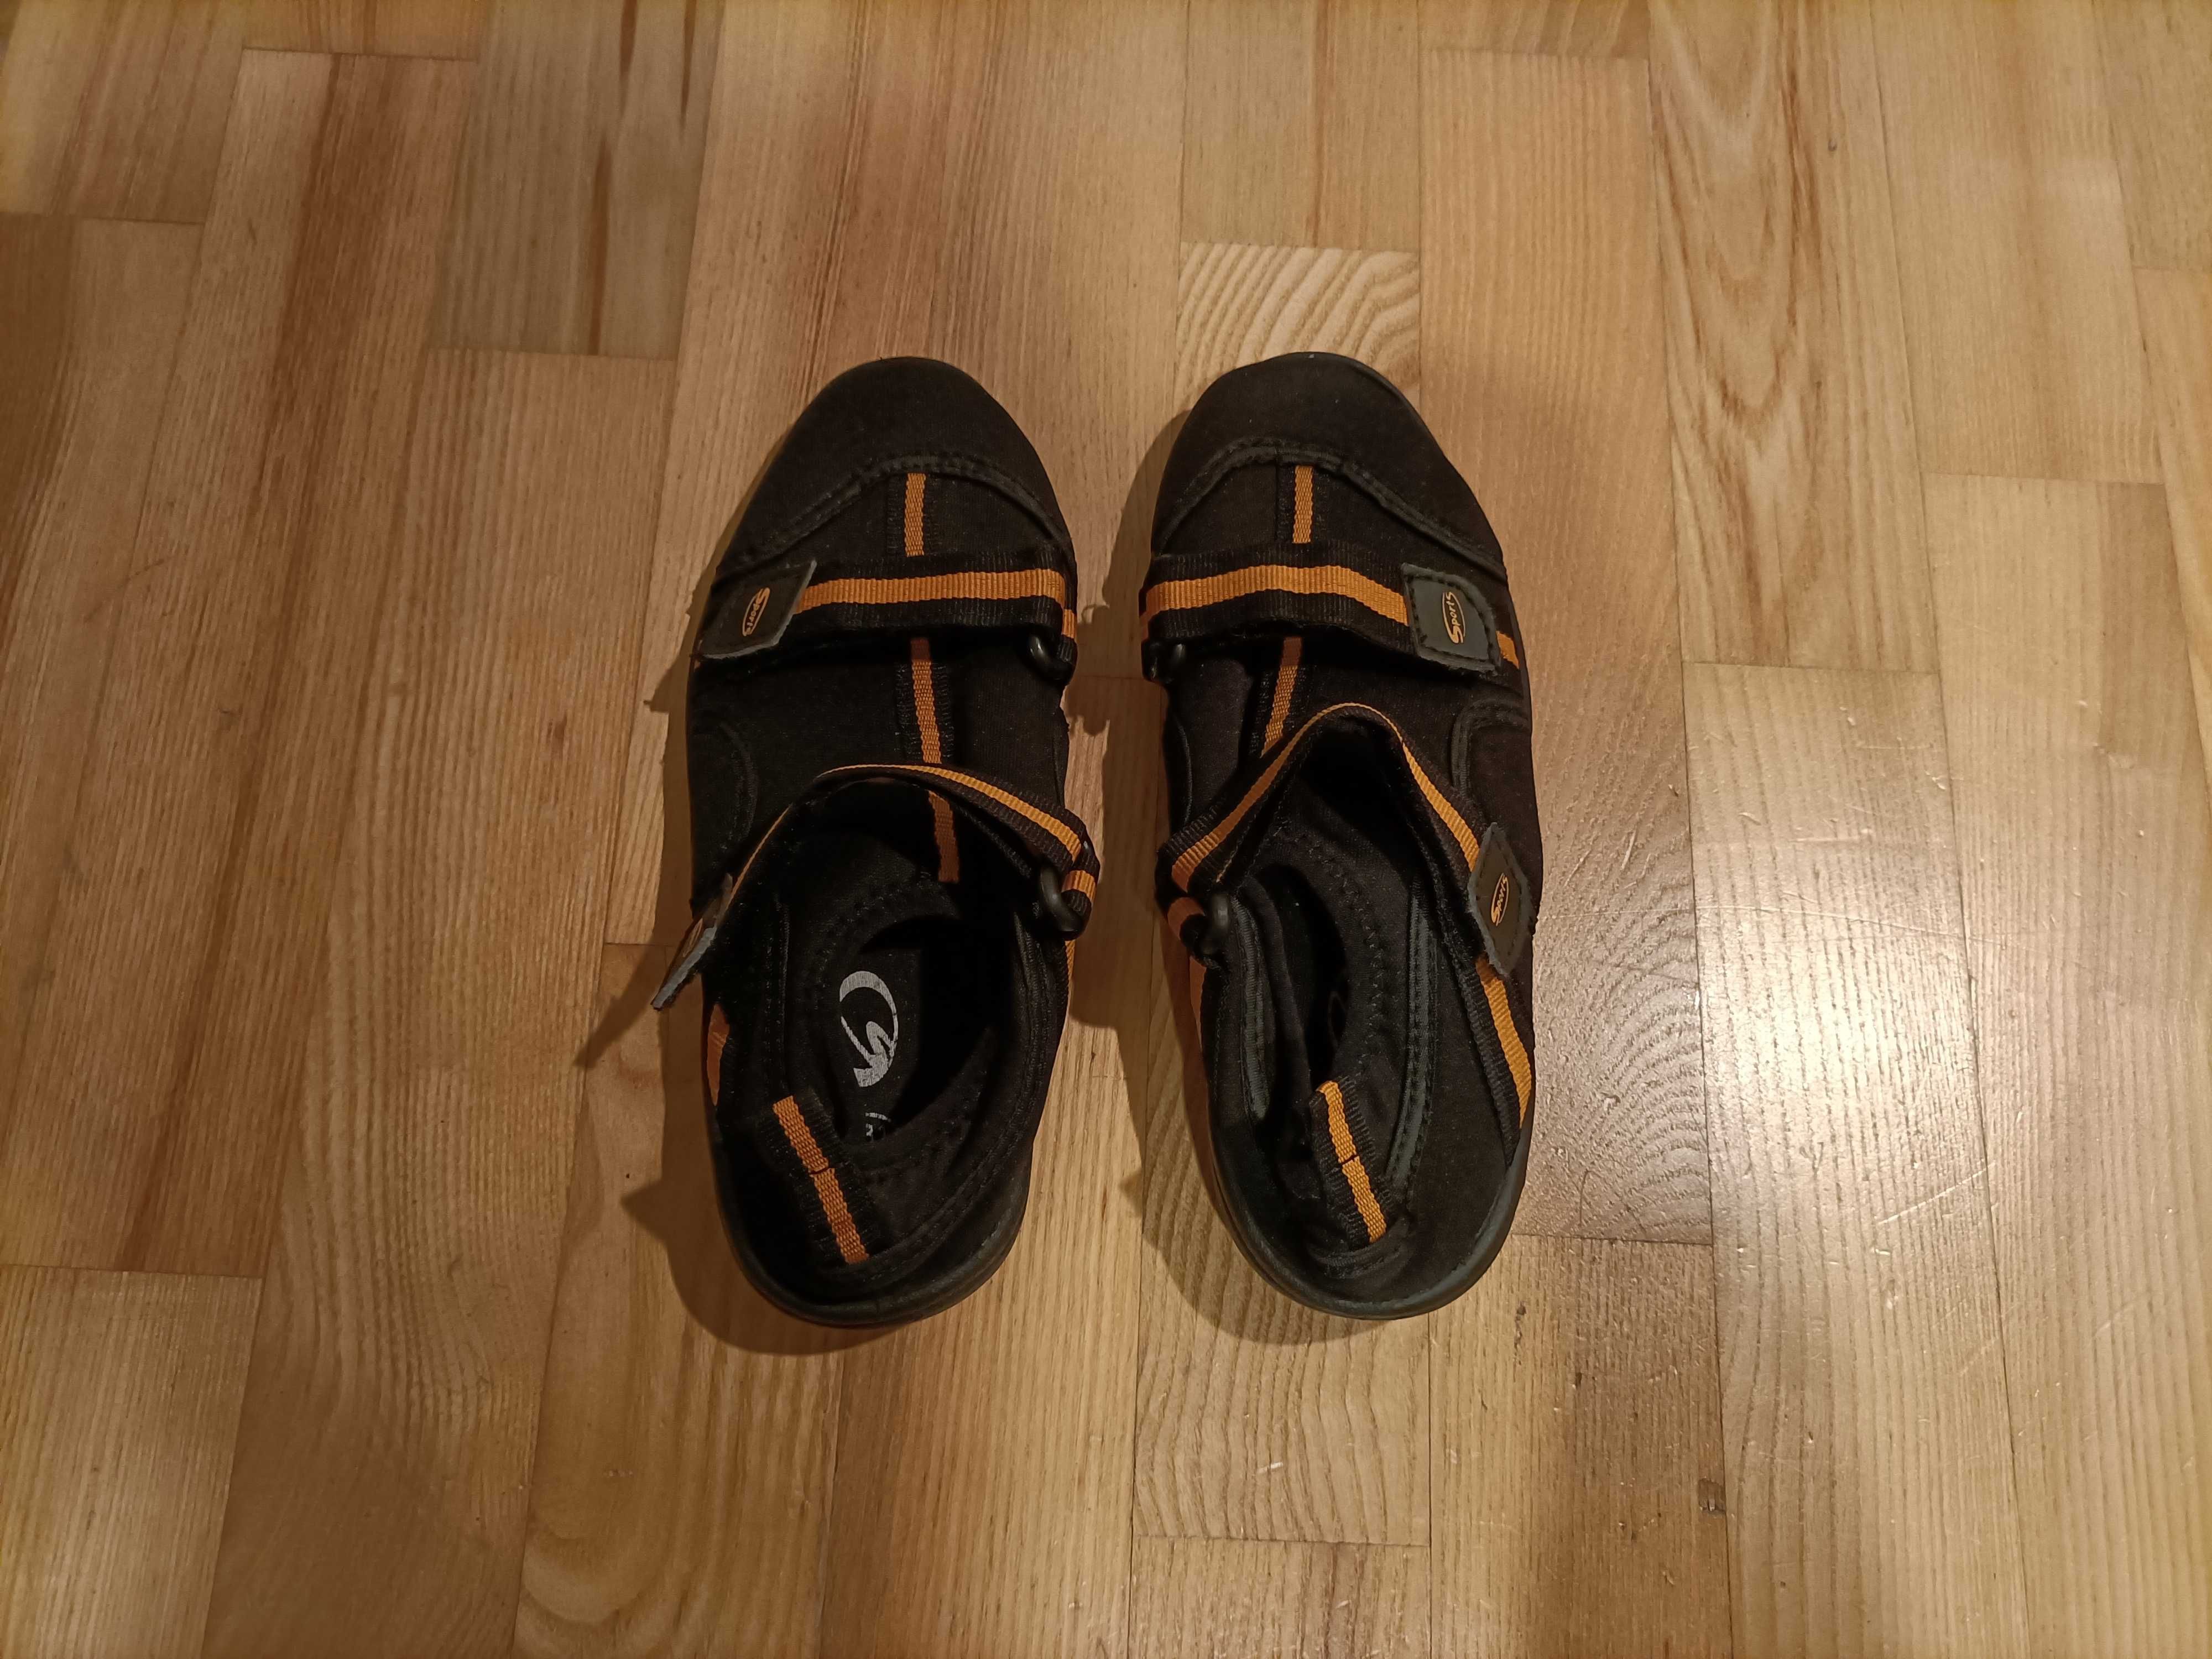 SPORTS specjalistyczne buty do wody – rozmiar 31 – 21 cm – 30,00 pln